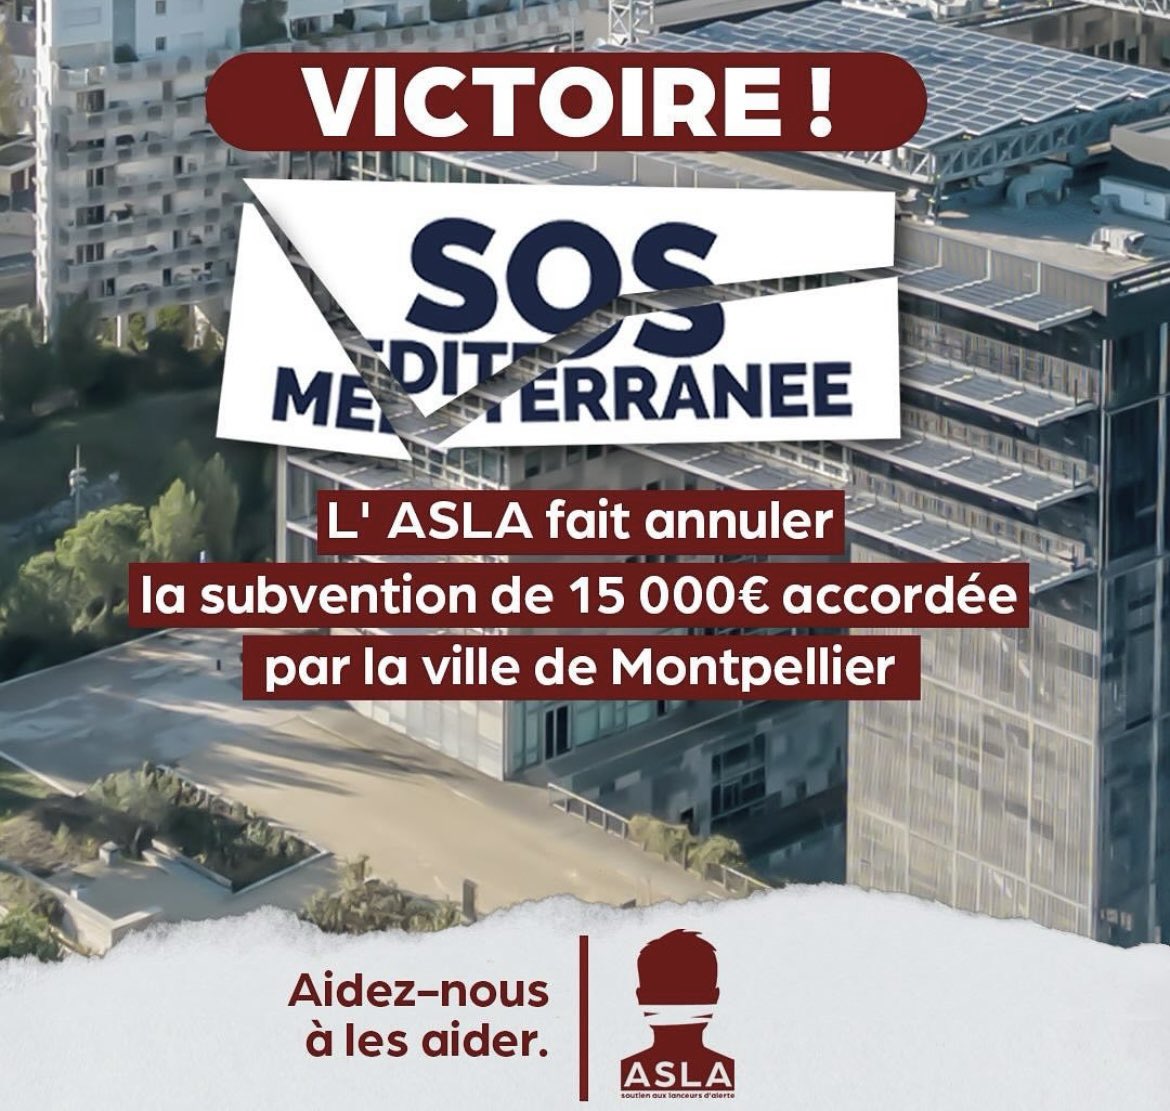 👉 Victoire pour l’ @ASLA_asso qui annonce avoir fait annuler la subvention de 15 000€ accordée à SOS MEDITERRANEE par la ville de Montpellier.